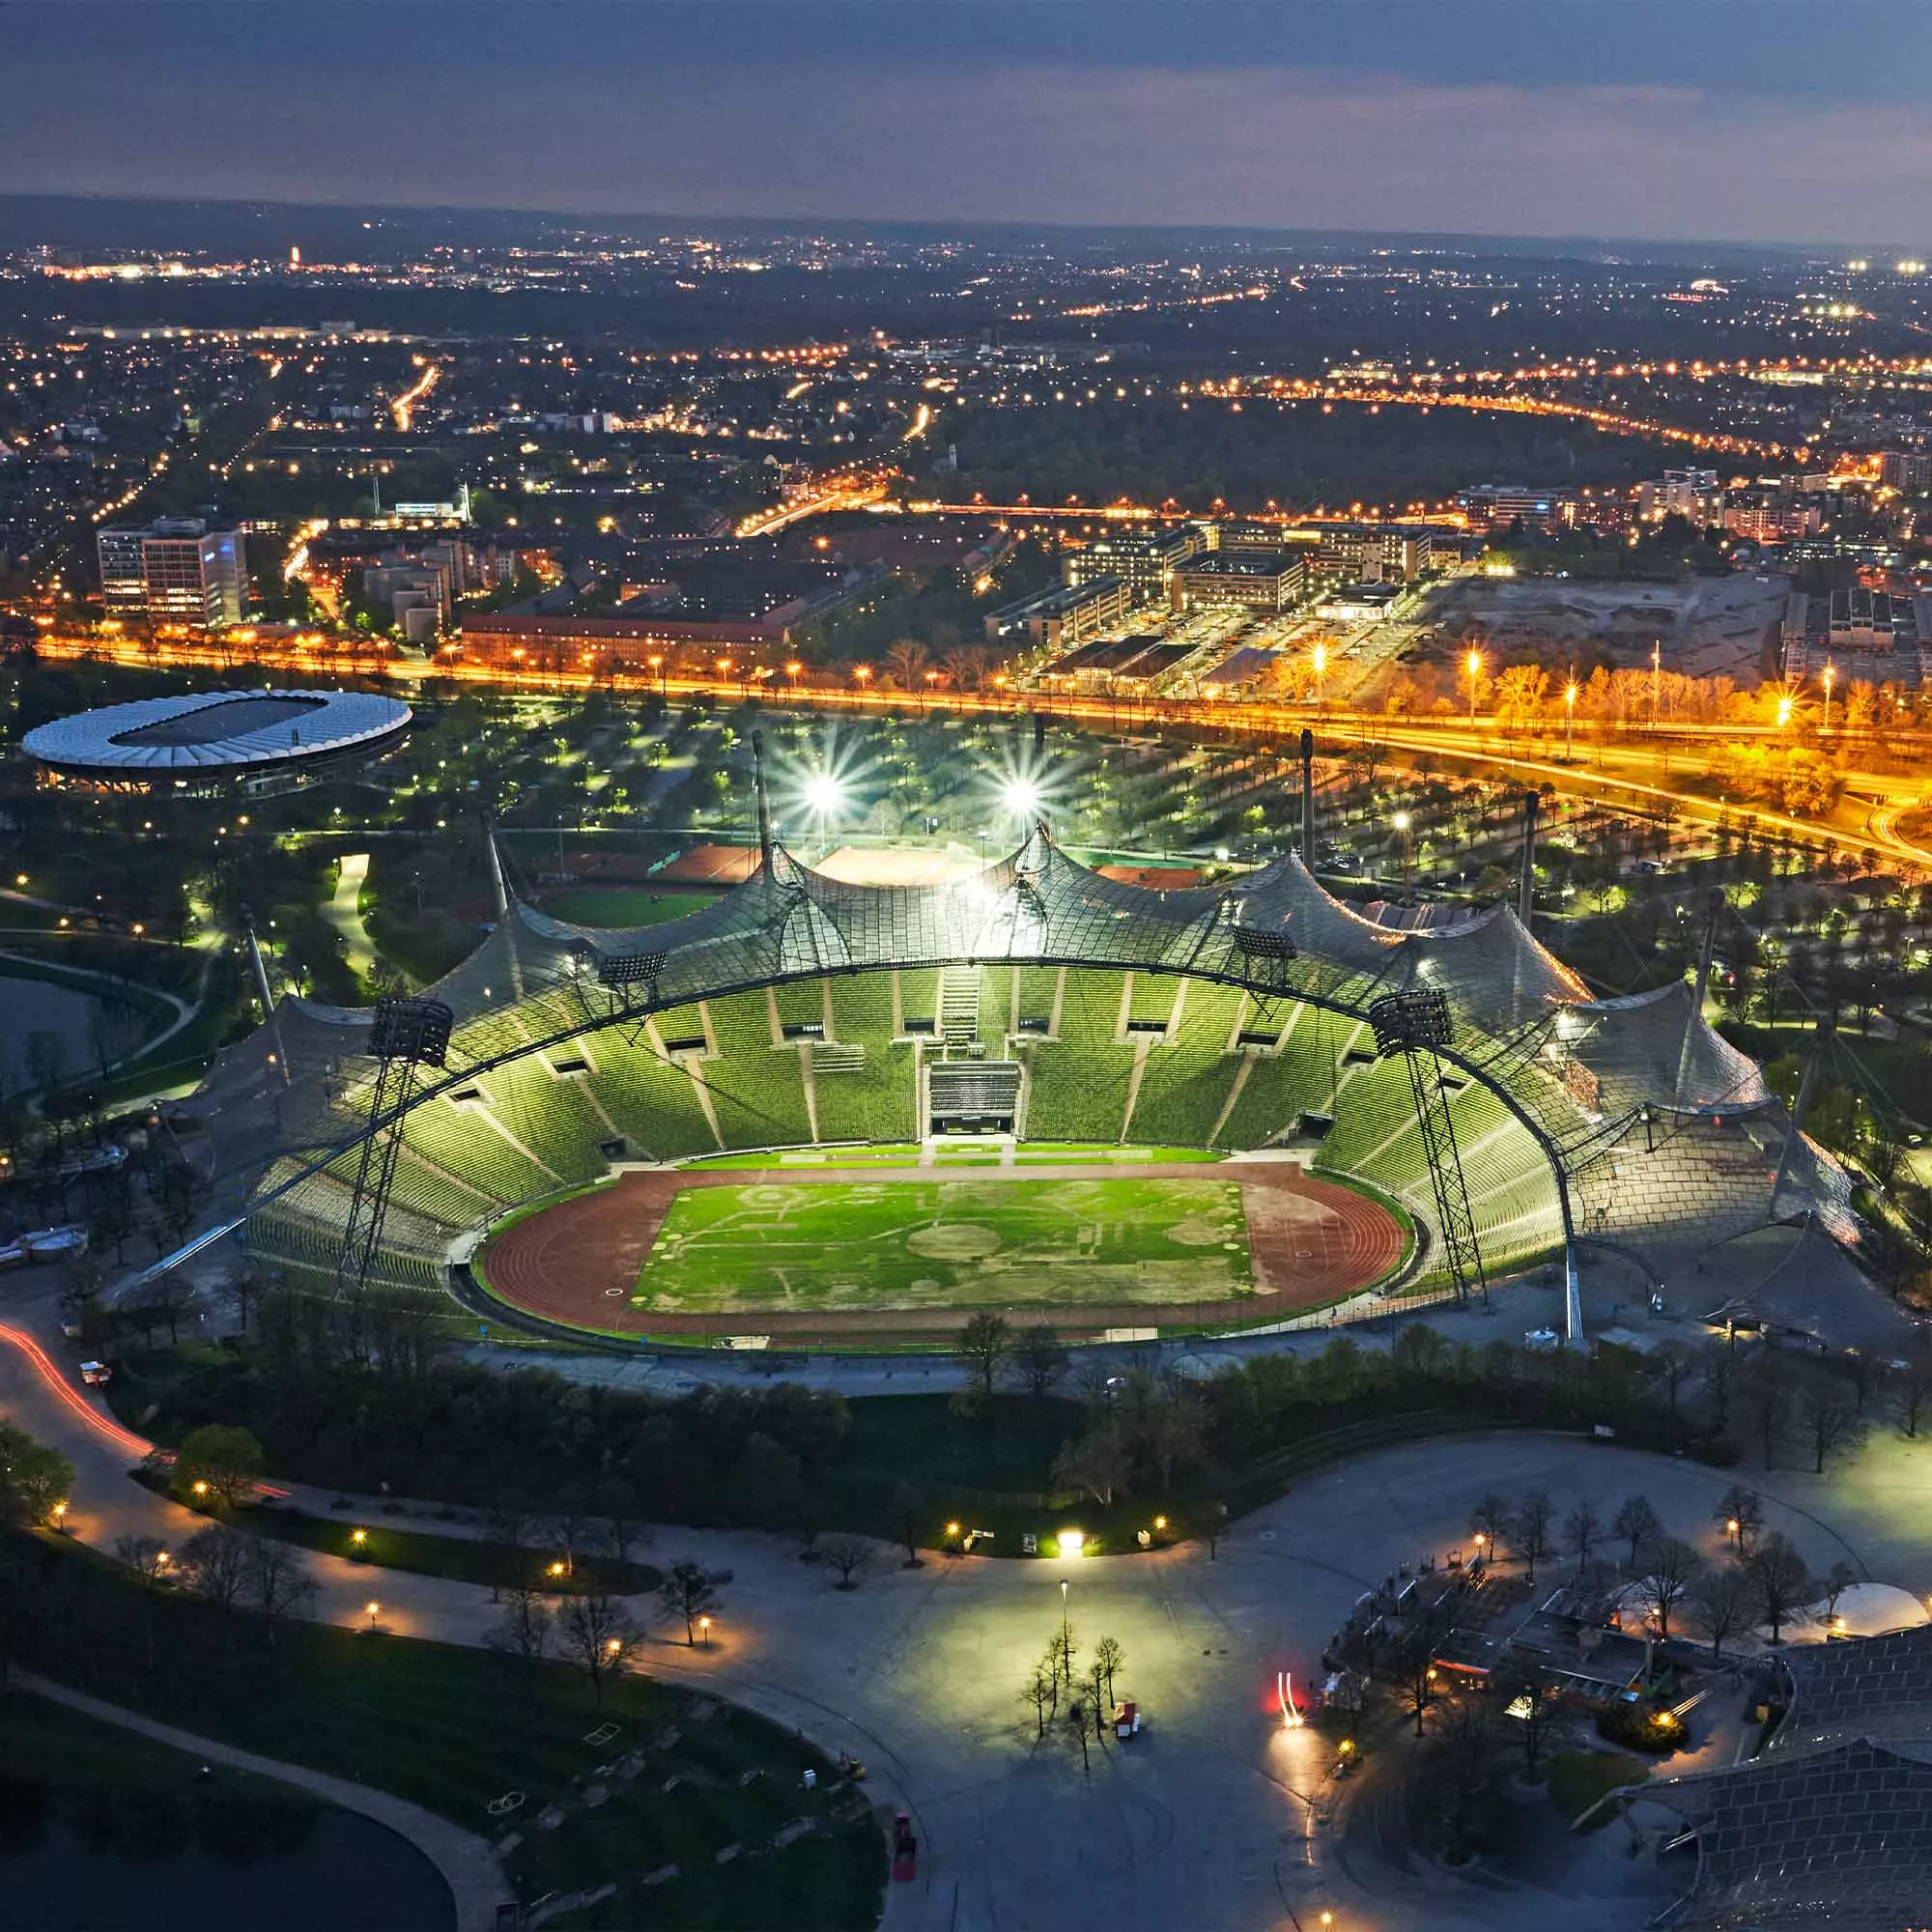 Das Olympiastadion in München bei Nacht.